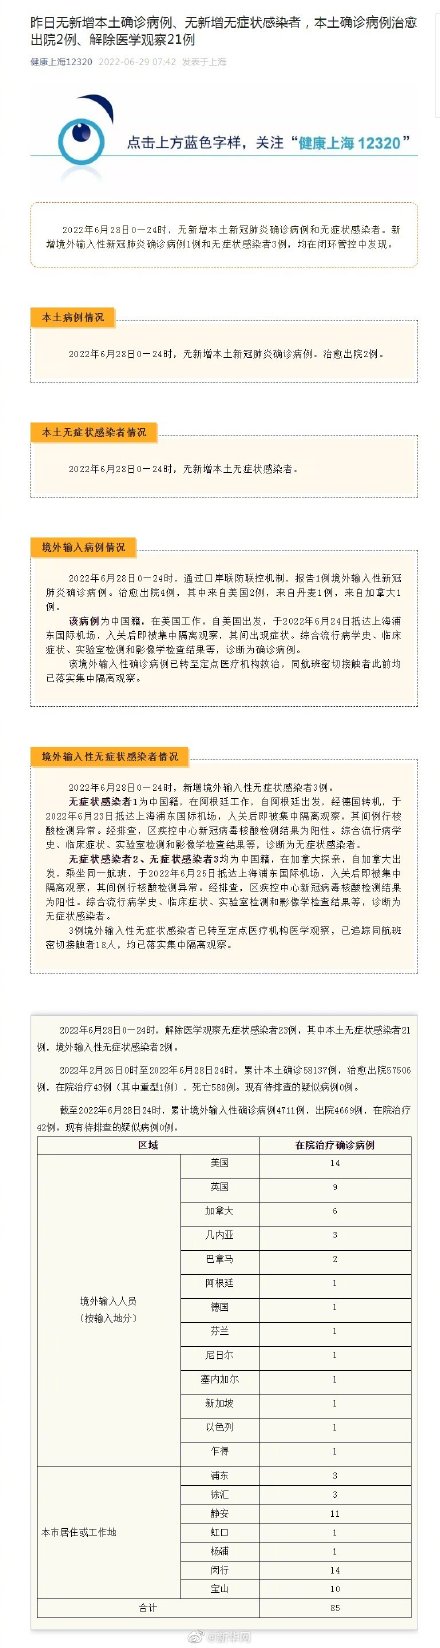 6月28日上海无新增本土感染者